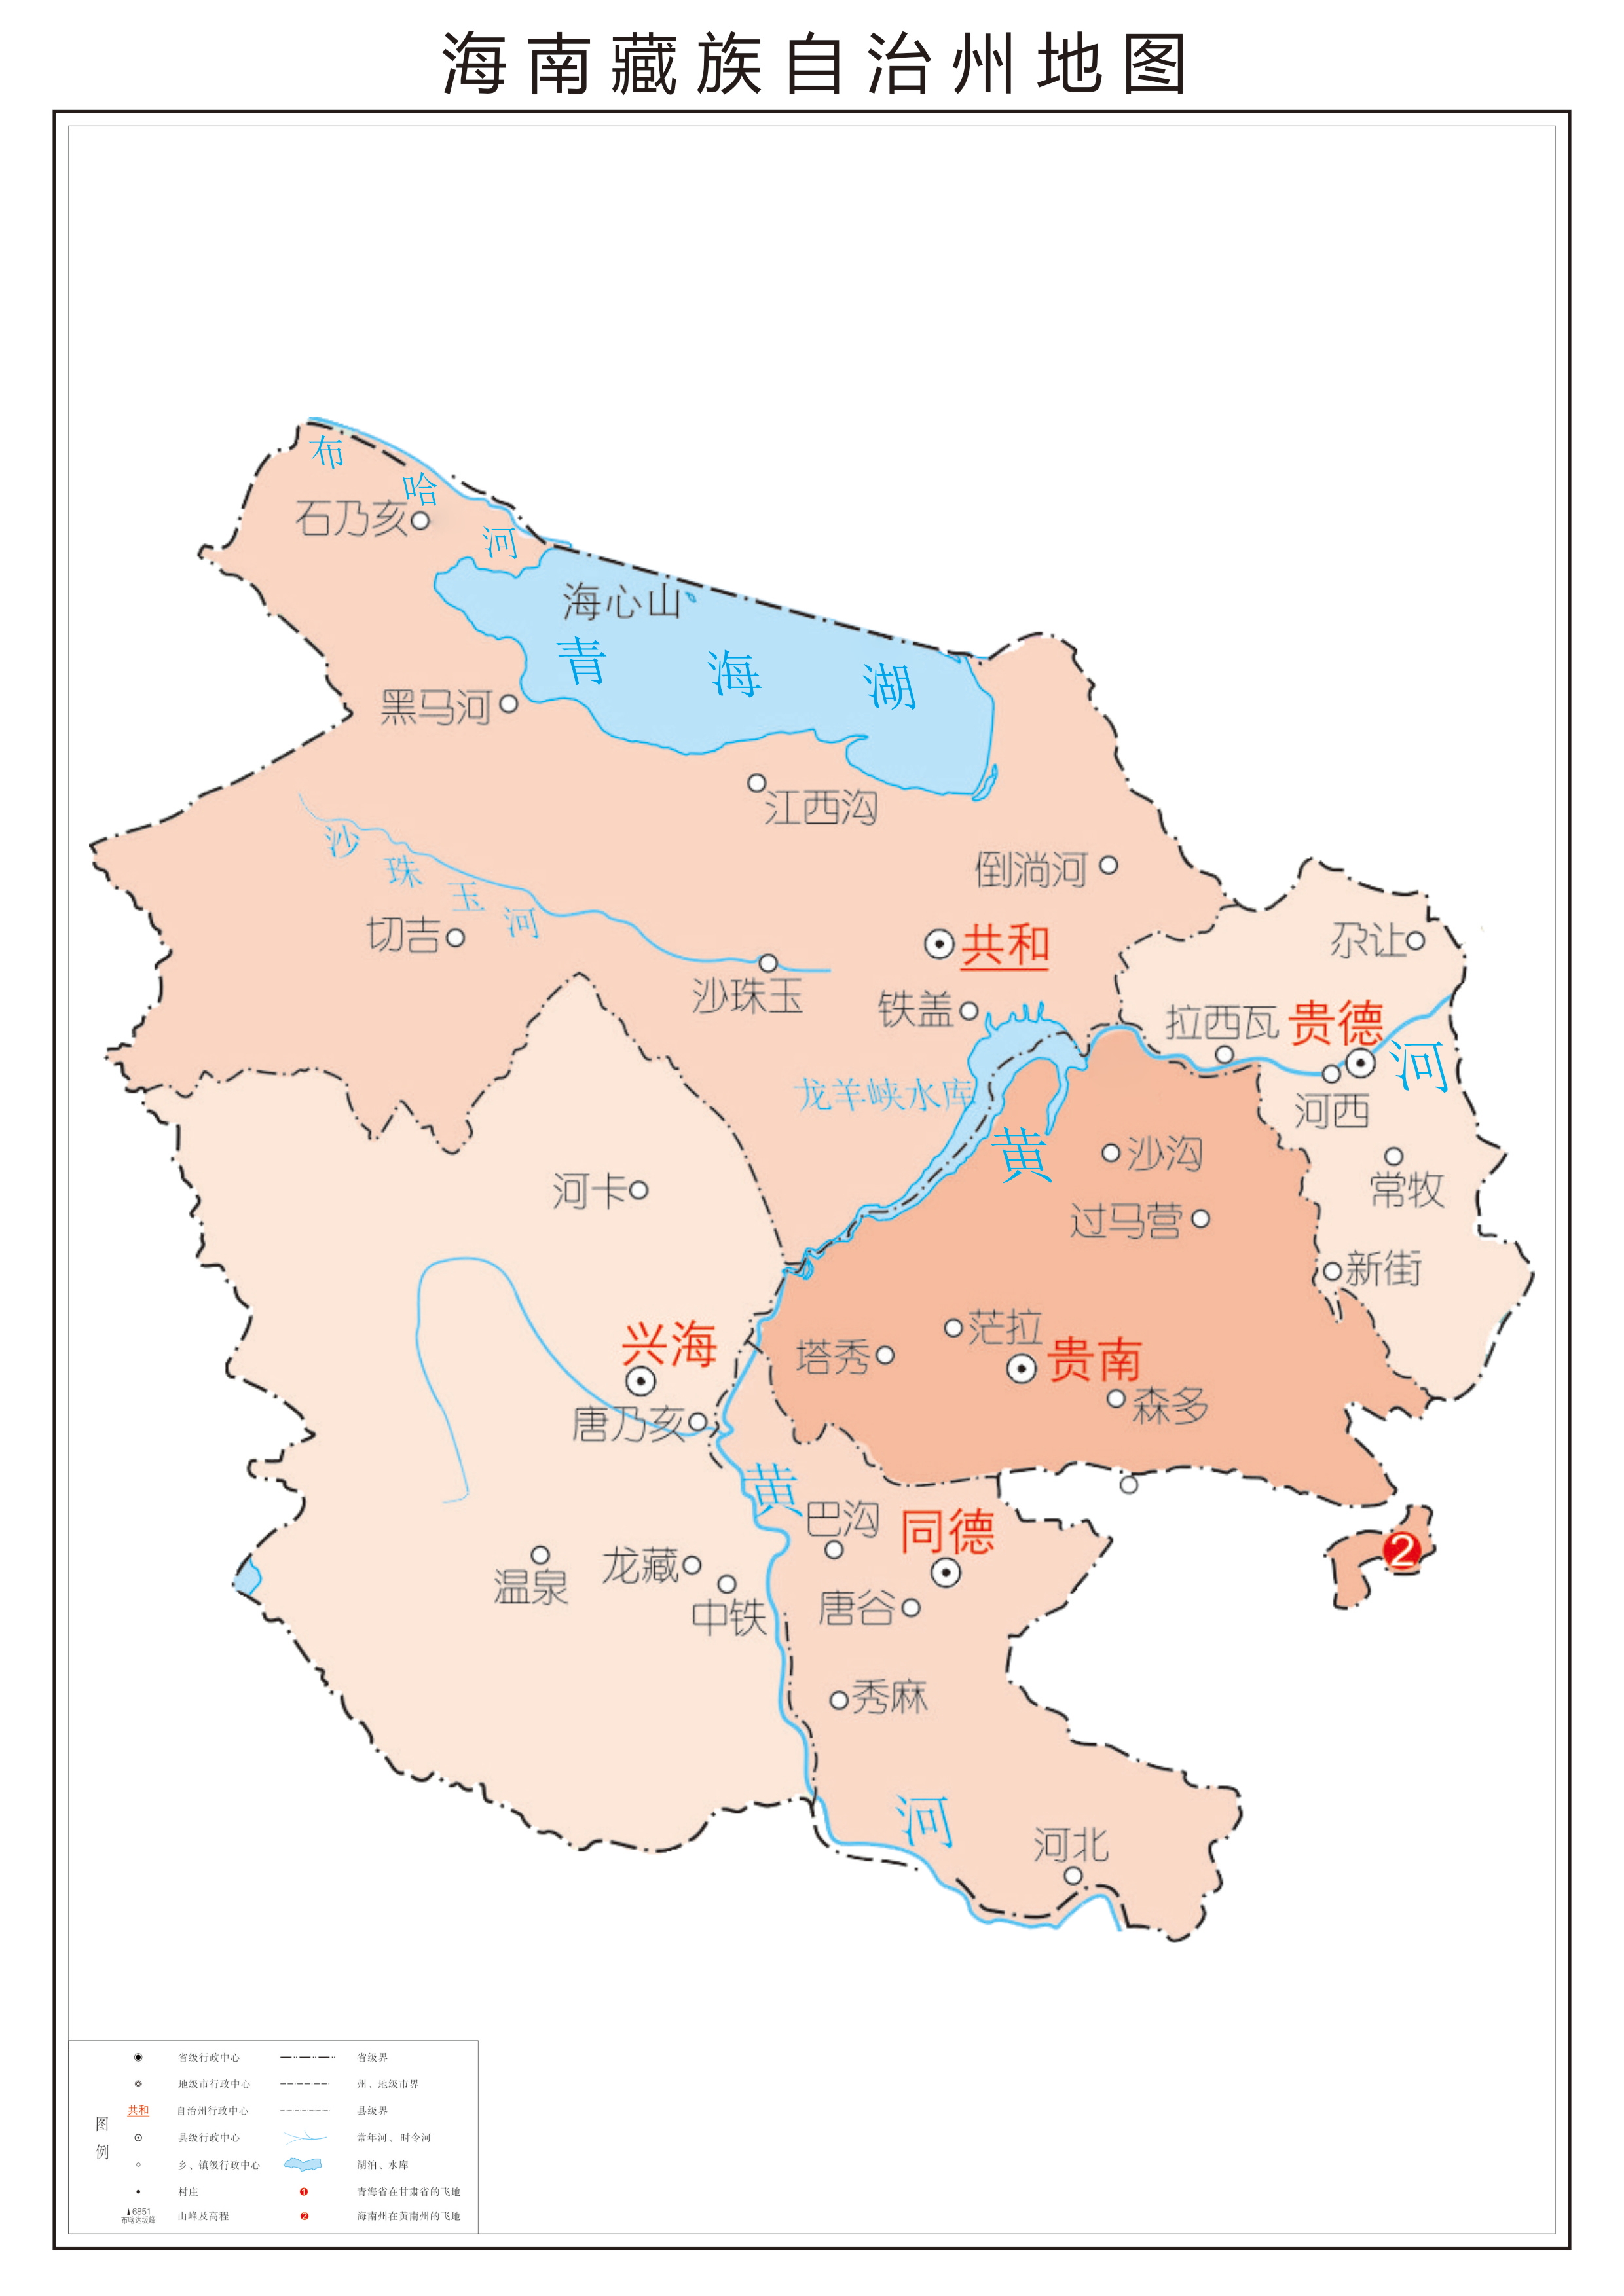 中华人民共和国-青海省行政区划地图